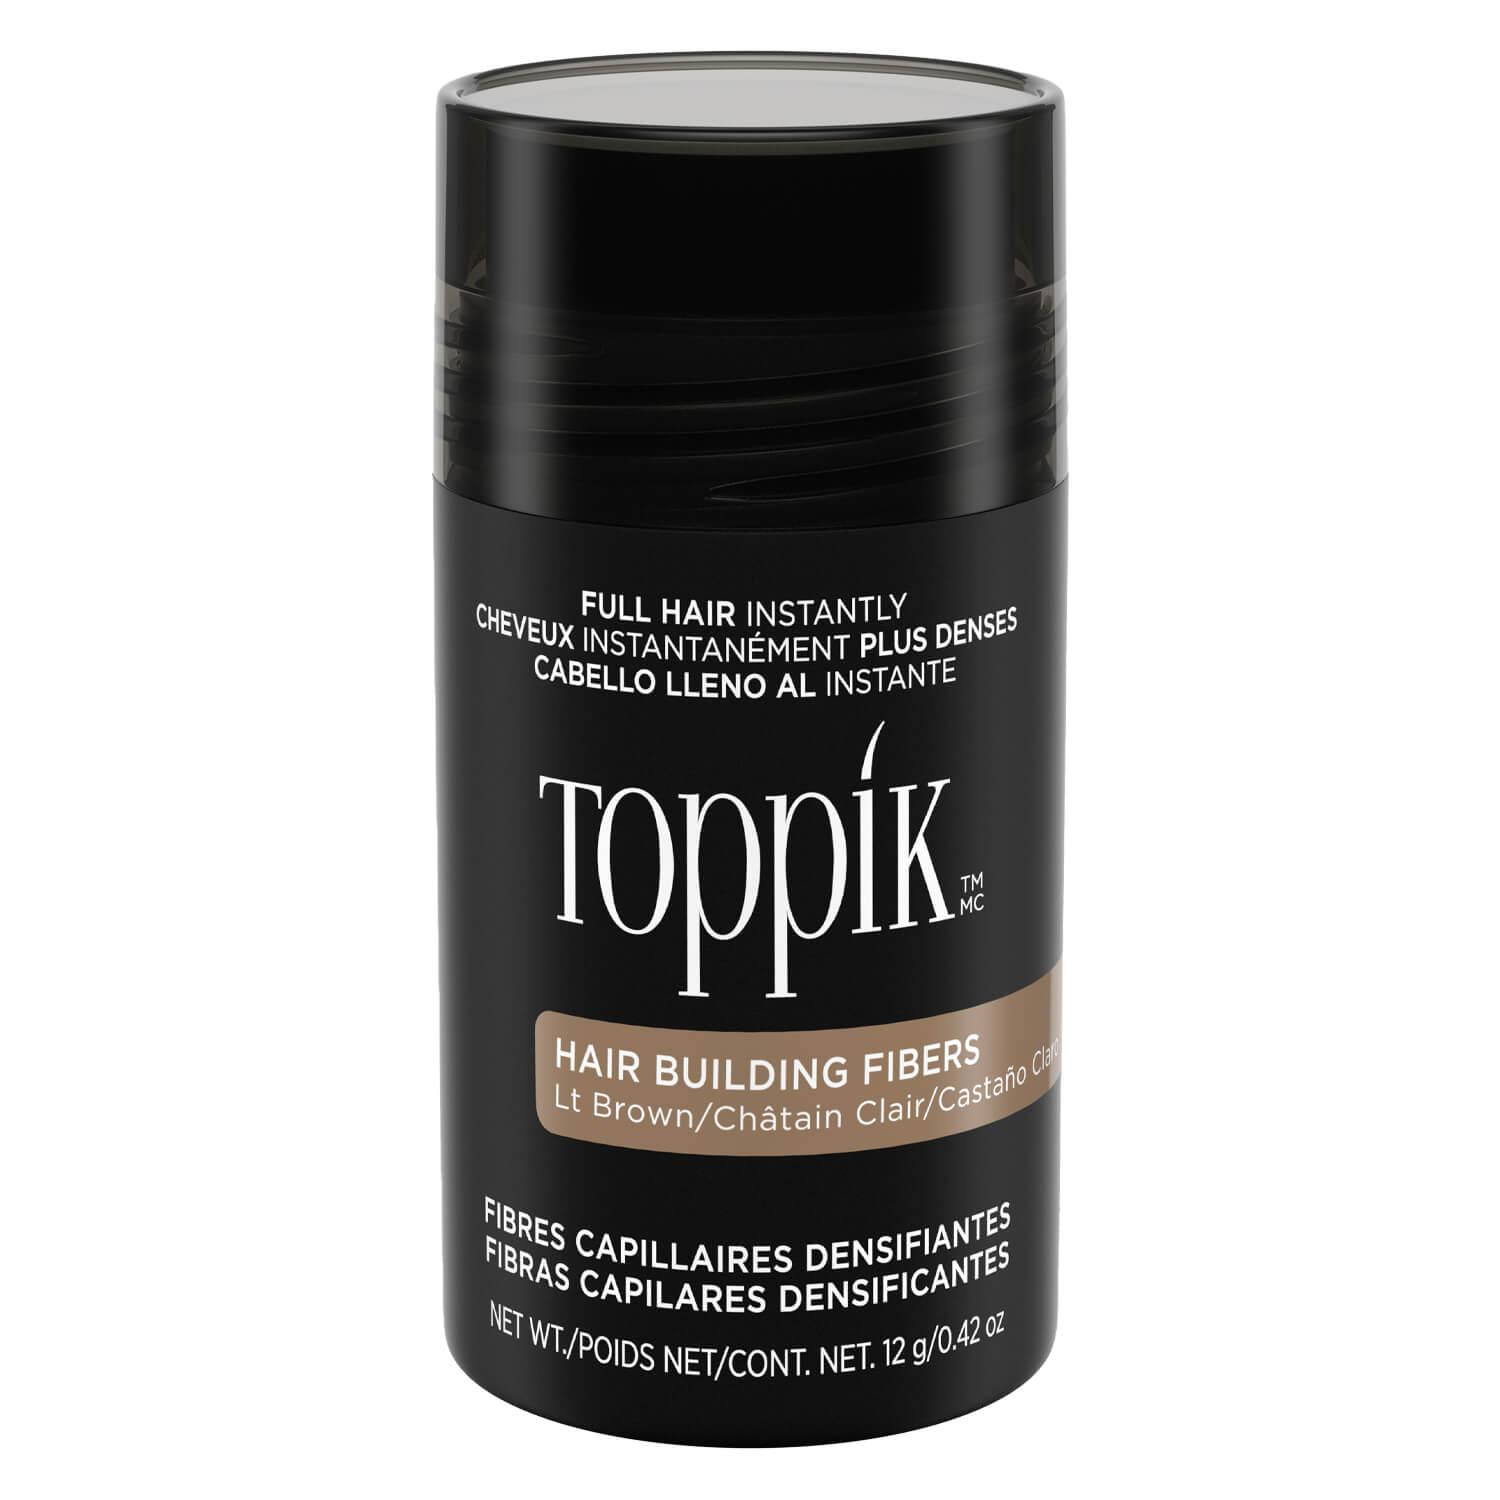 Toppik - Hair Building Fibers Light Brown